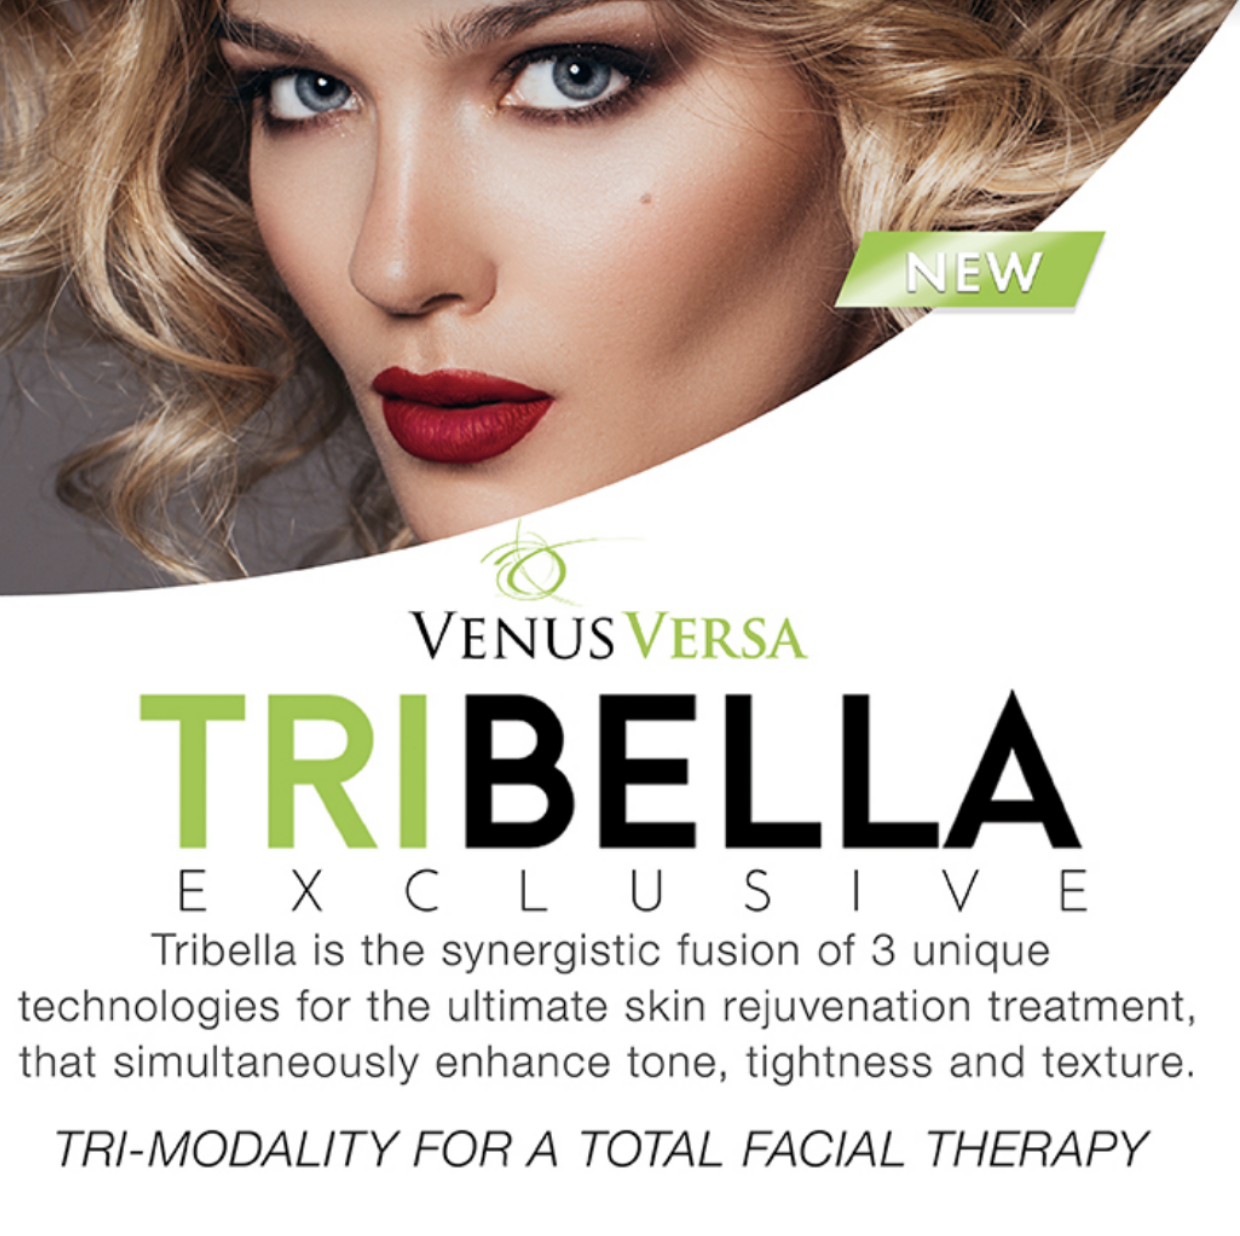 Venus Versa Tribella combination treatments in Westford, NJ